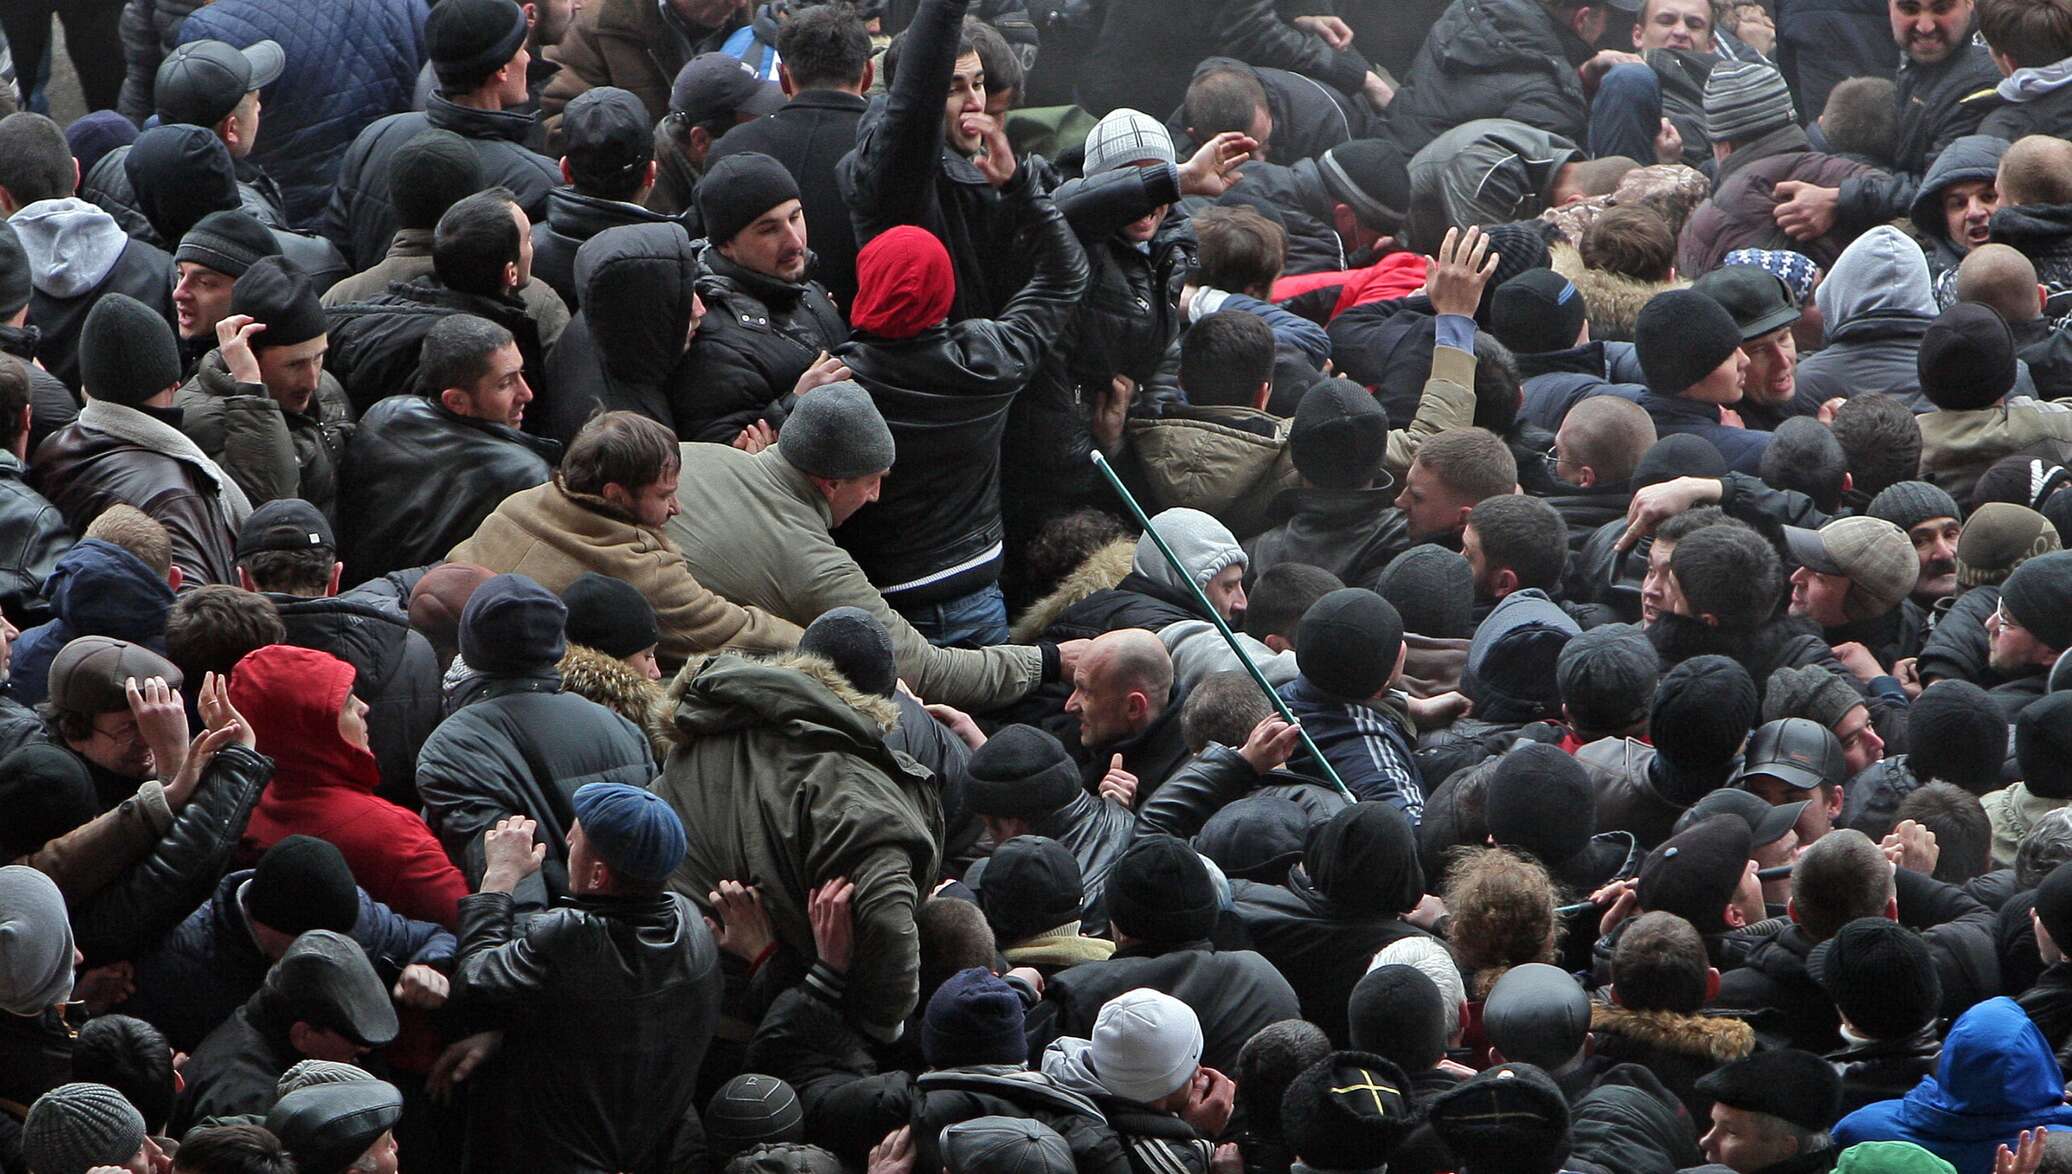 Крым в феврале 2014 года. 26 Февраля в Симферополе у стен Крымского парламента. 26 Февраля 2014 Крым митинг. Митинг 26 февраля 2014 Симферополь. Агрессивная толпа.